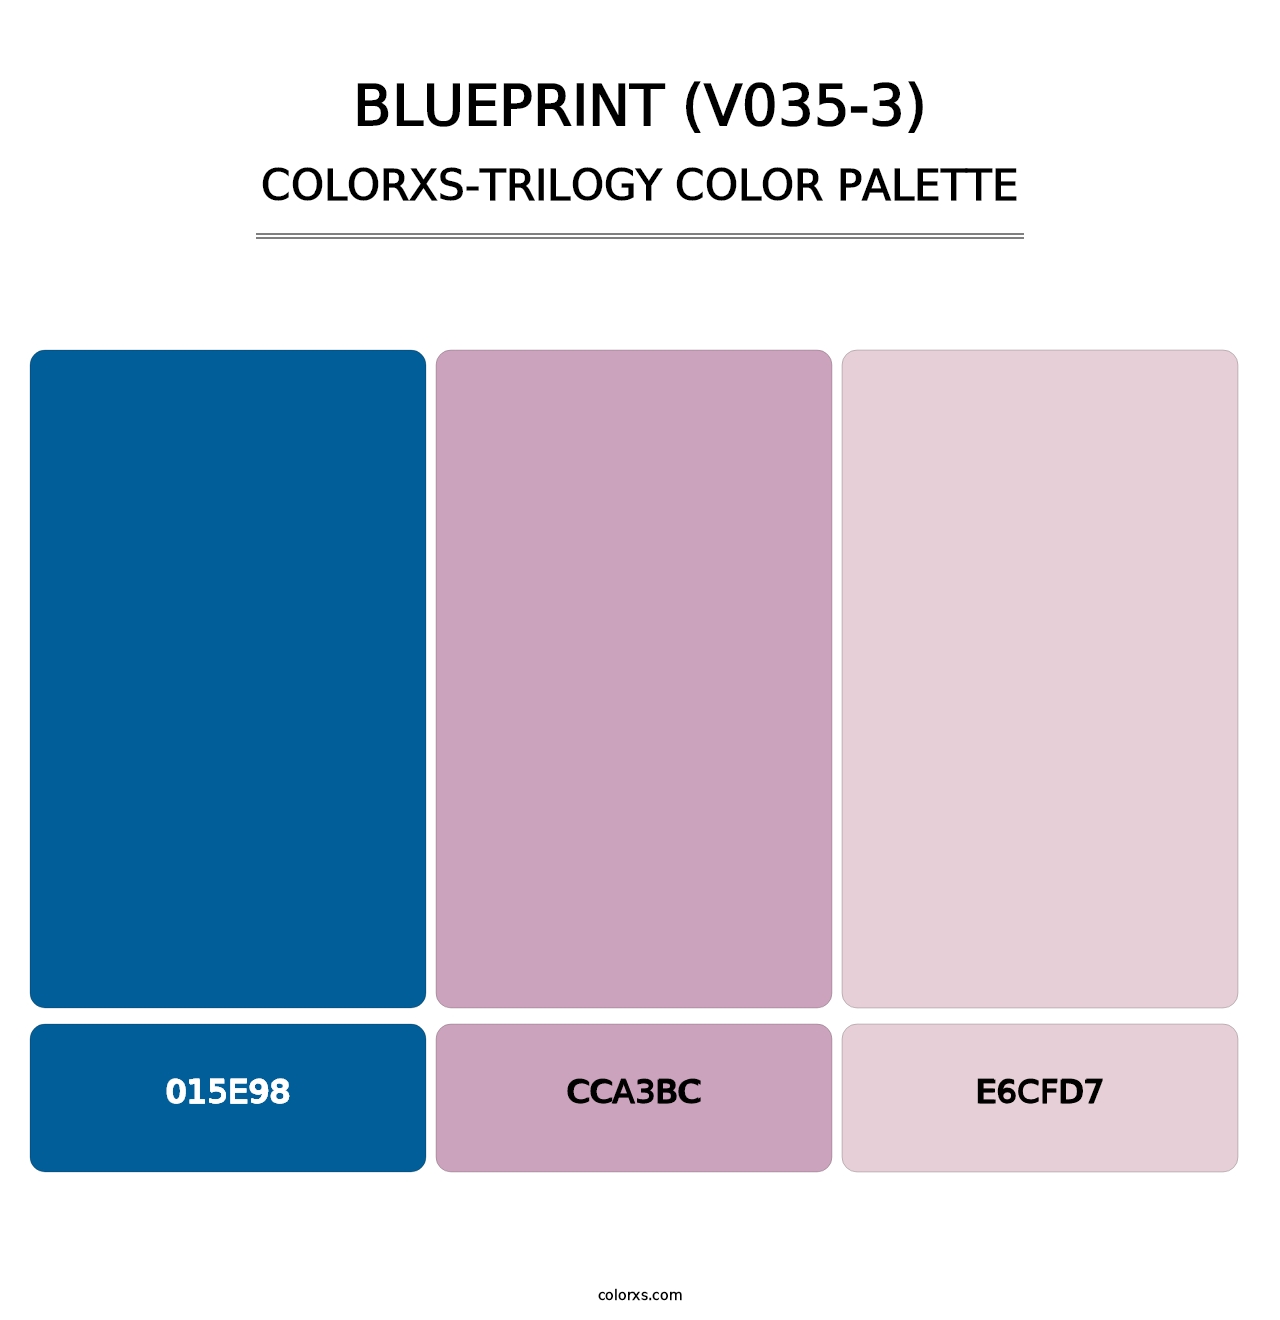 Blueprint (V035-3) - Colorxs Trilogy Palette